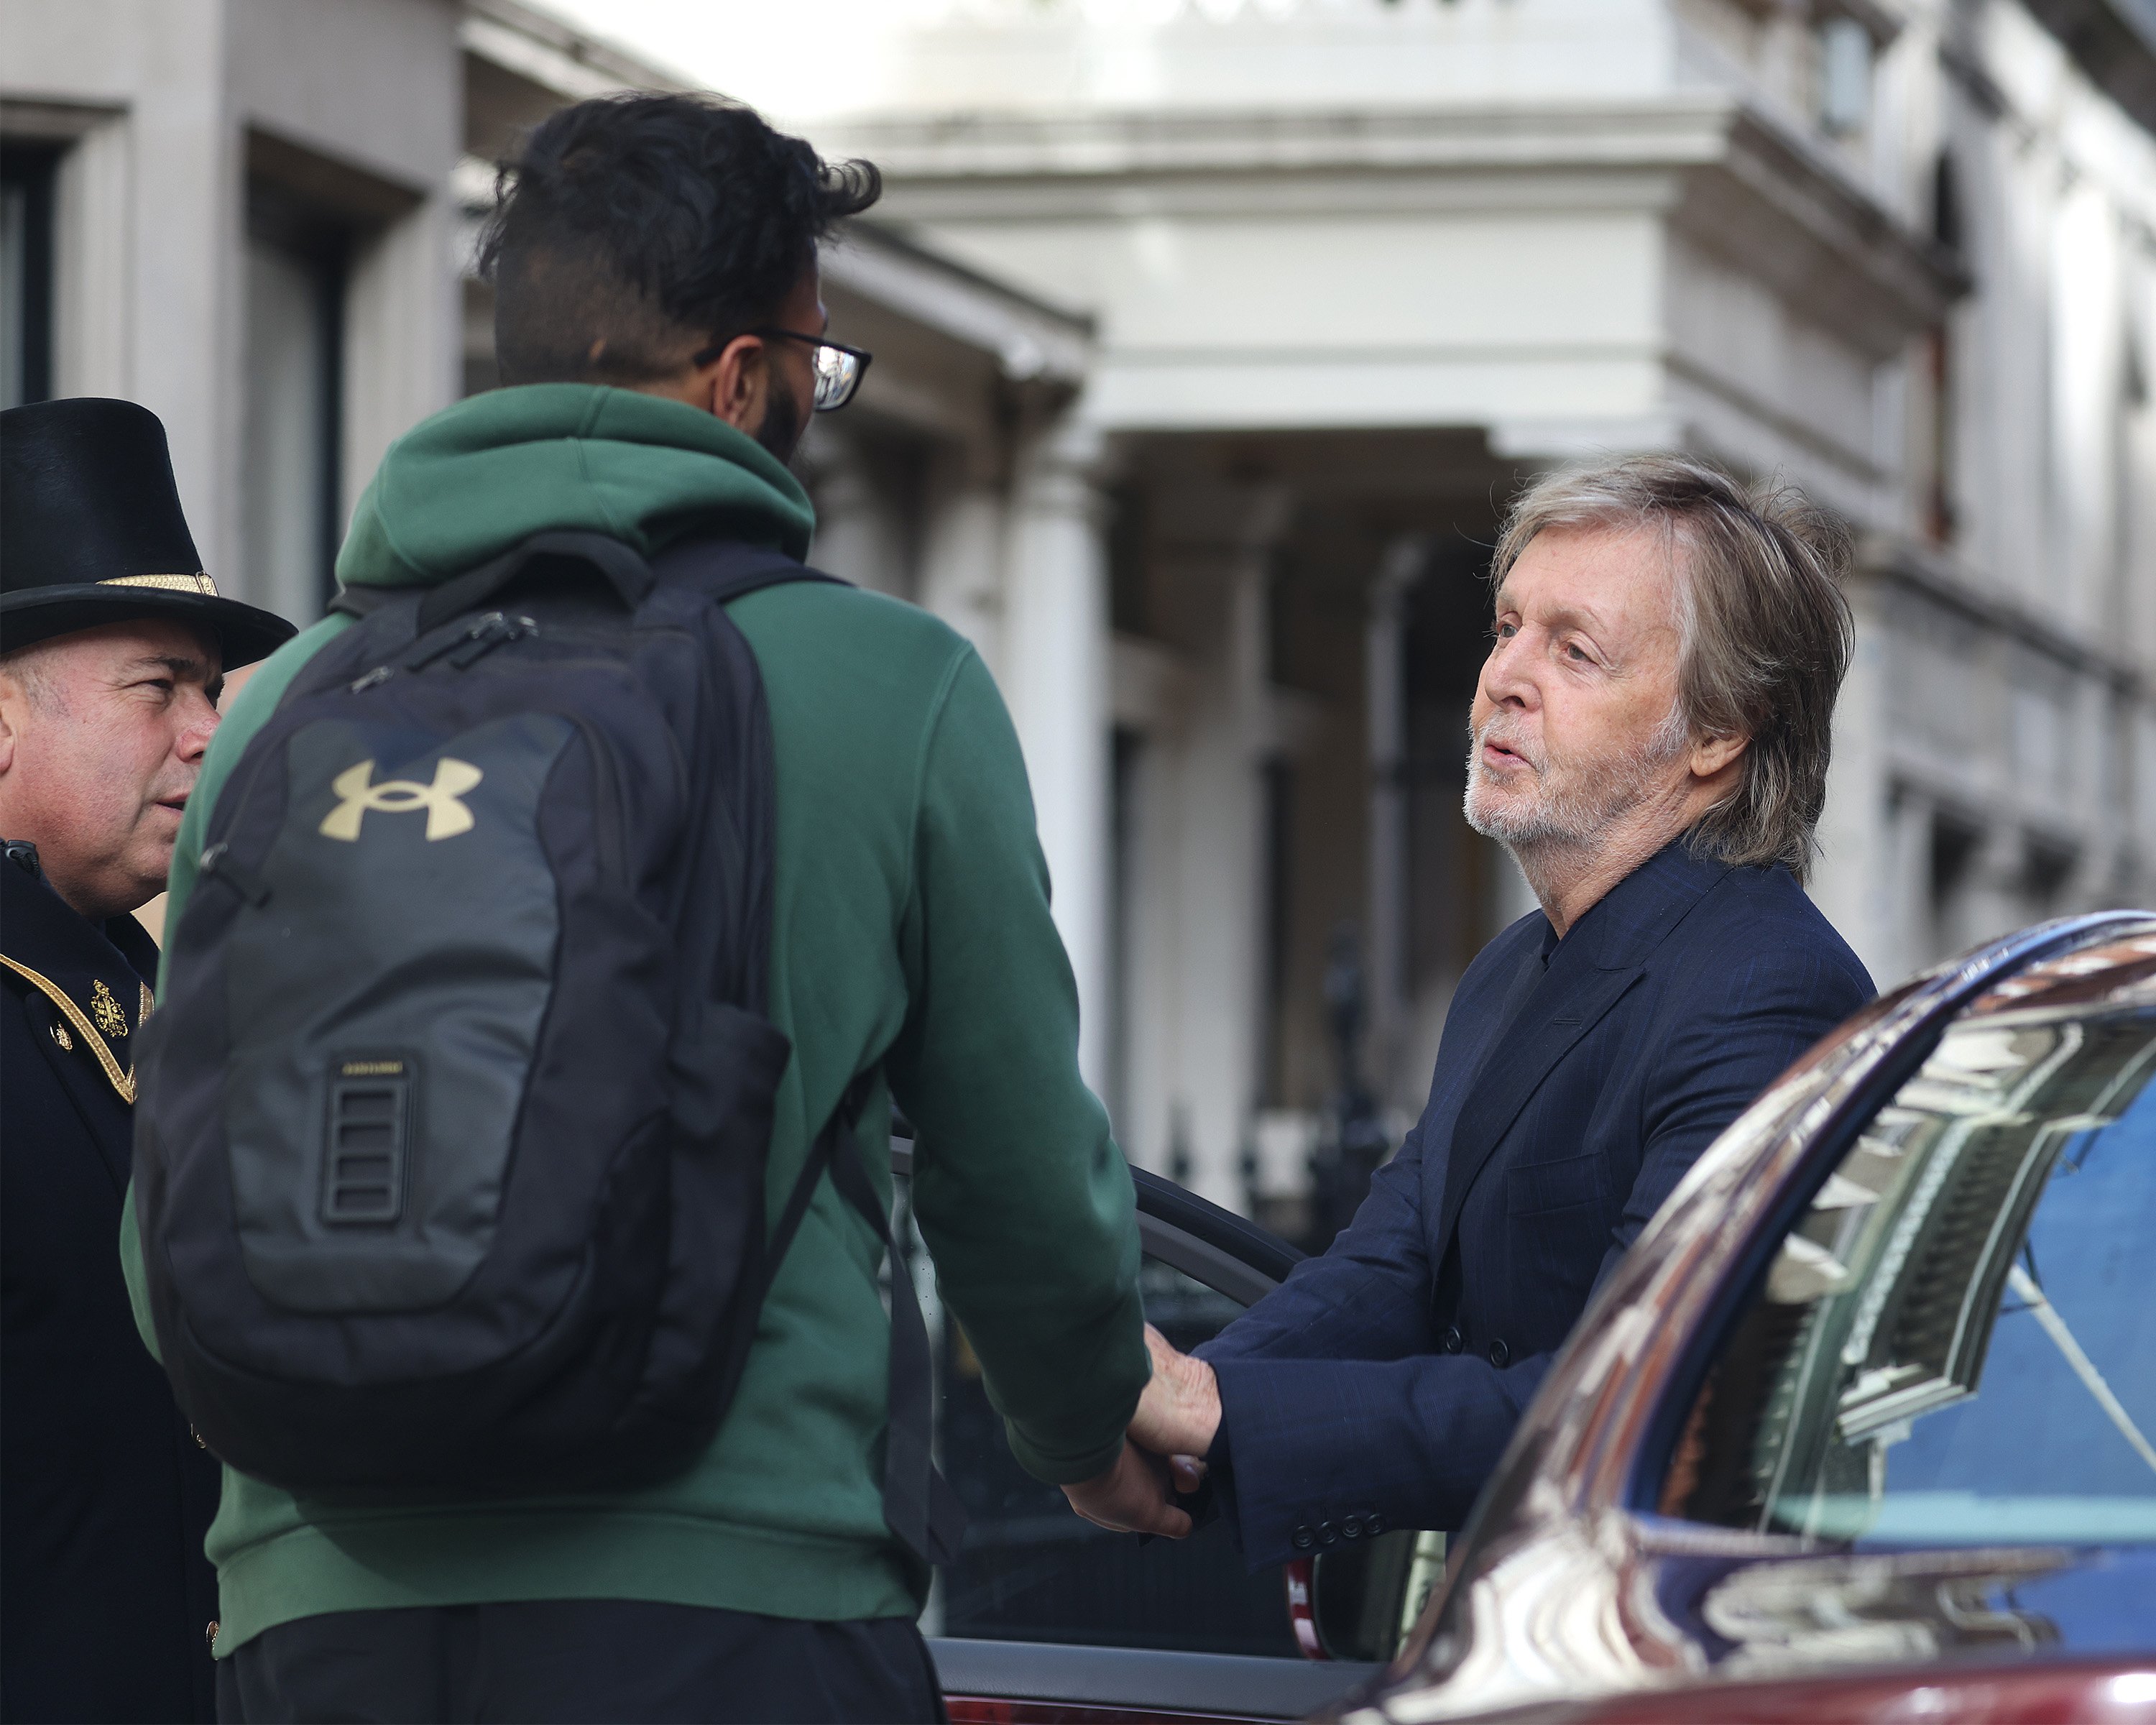 Paul McCartney im Gespräch mit einem Fan am 27. September 2022 in London, England. | Quelle: Getty Images